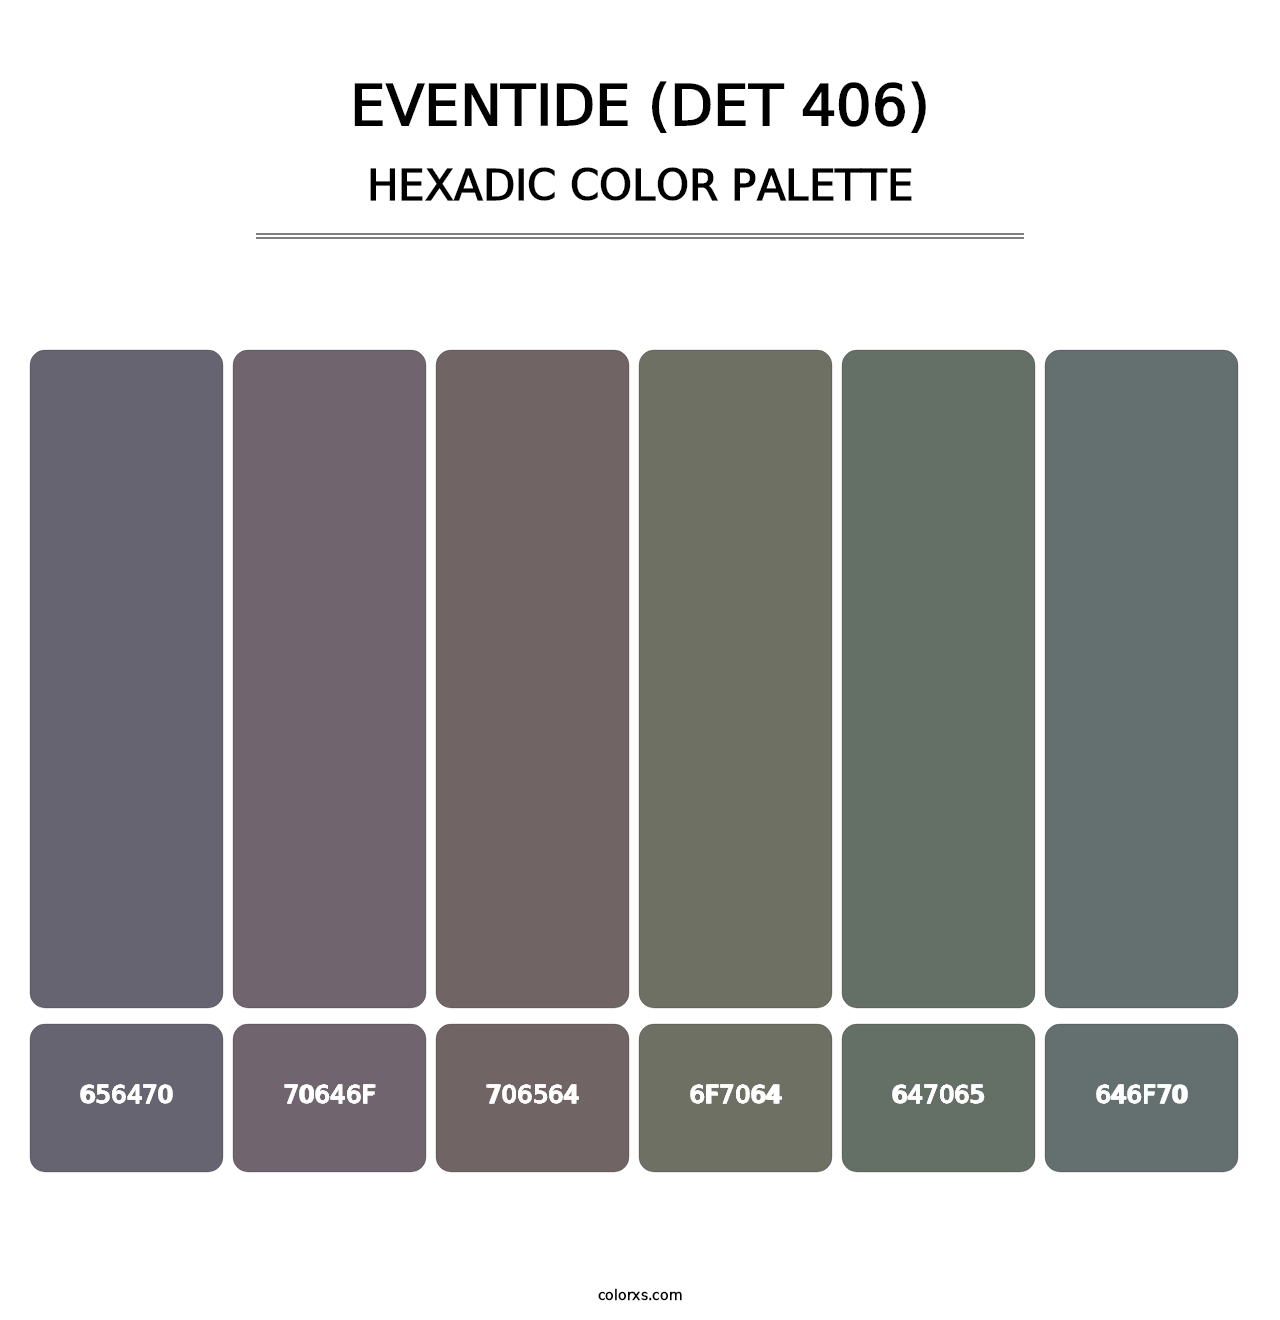 Eventide (DET 406) - Hexadic Color Palette